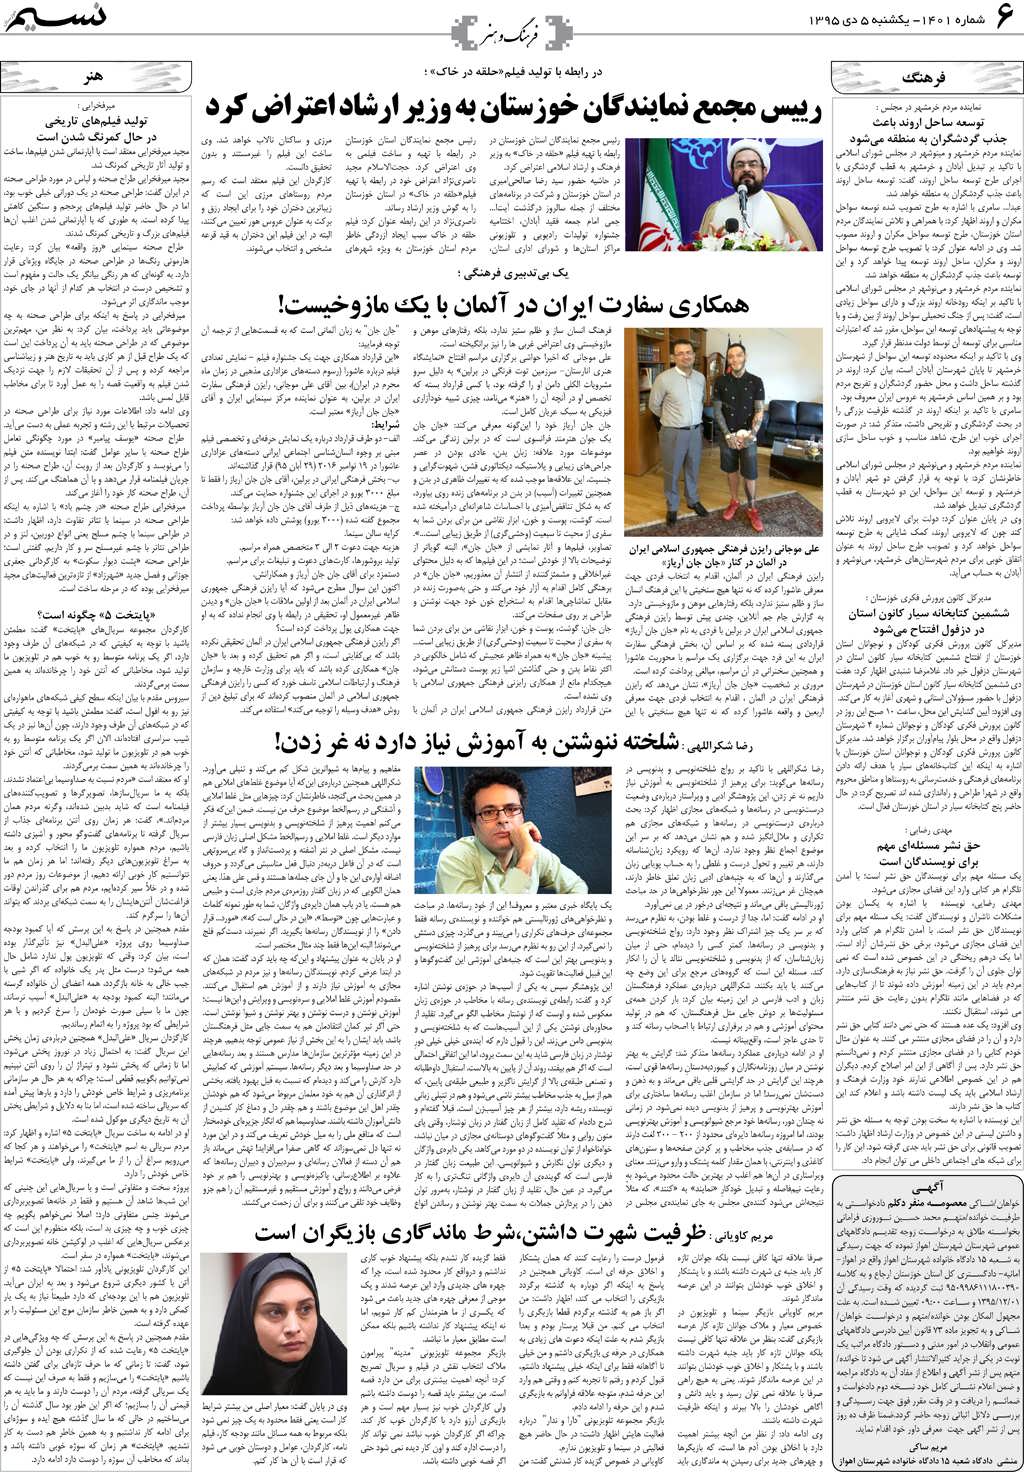 صفحه فرهنگ و هنر روزنامه نسیم شماره 1401